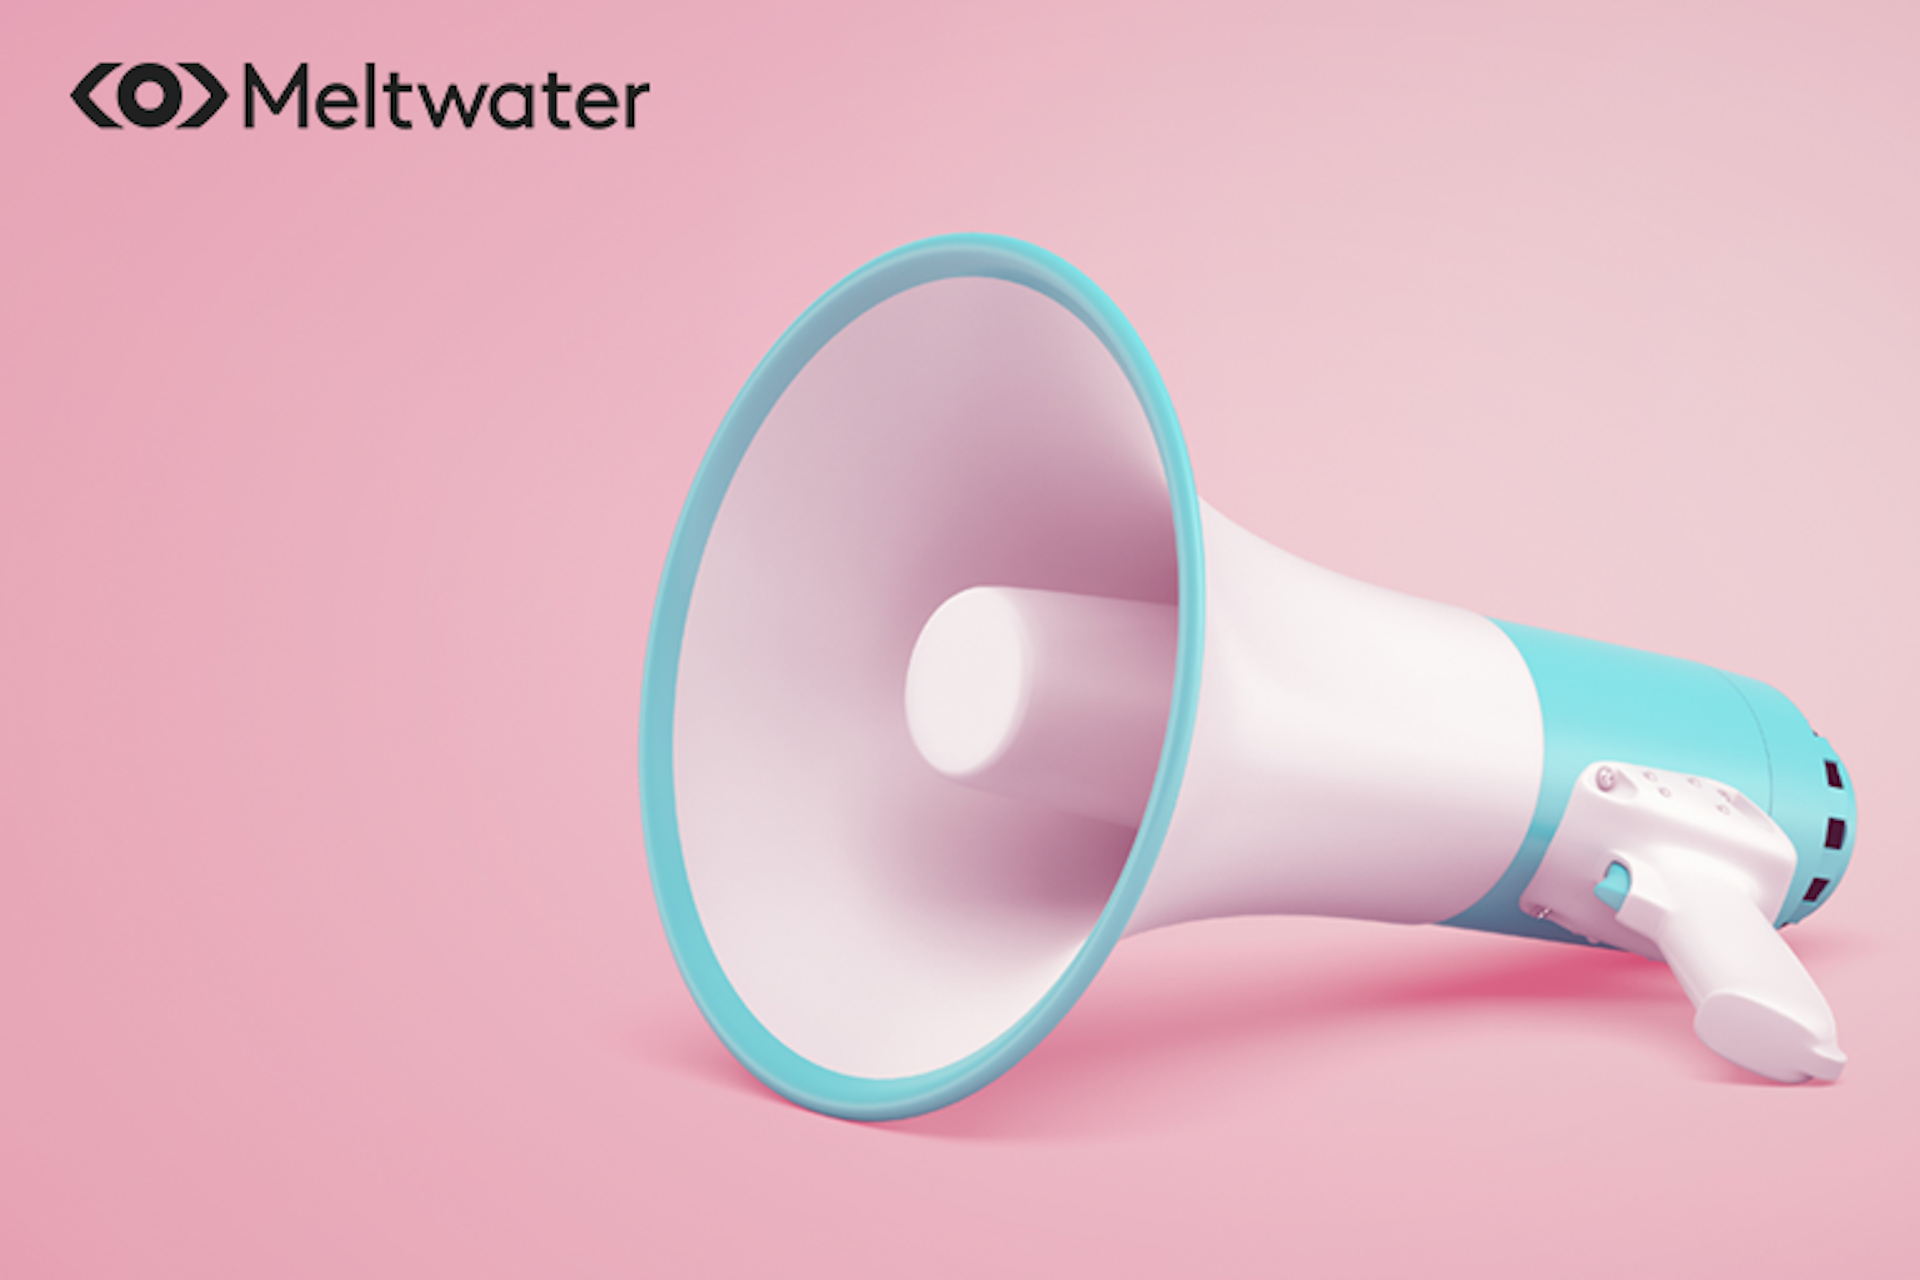 Eine 3D-Darstellung eines Megaphons, das auf der Seite liegt - mit rosa Hintergrund und Meltwater Logo als Titelbild für unseren Beitrag dazu, wie man eine PR-Strategie entwickelt